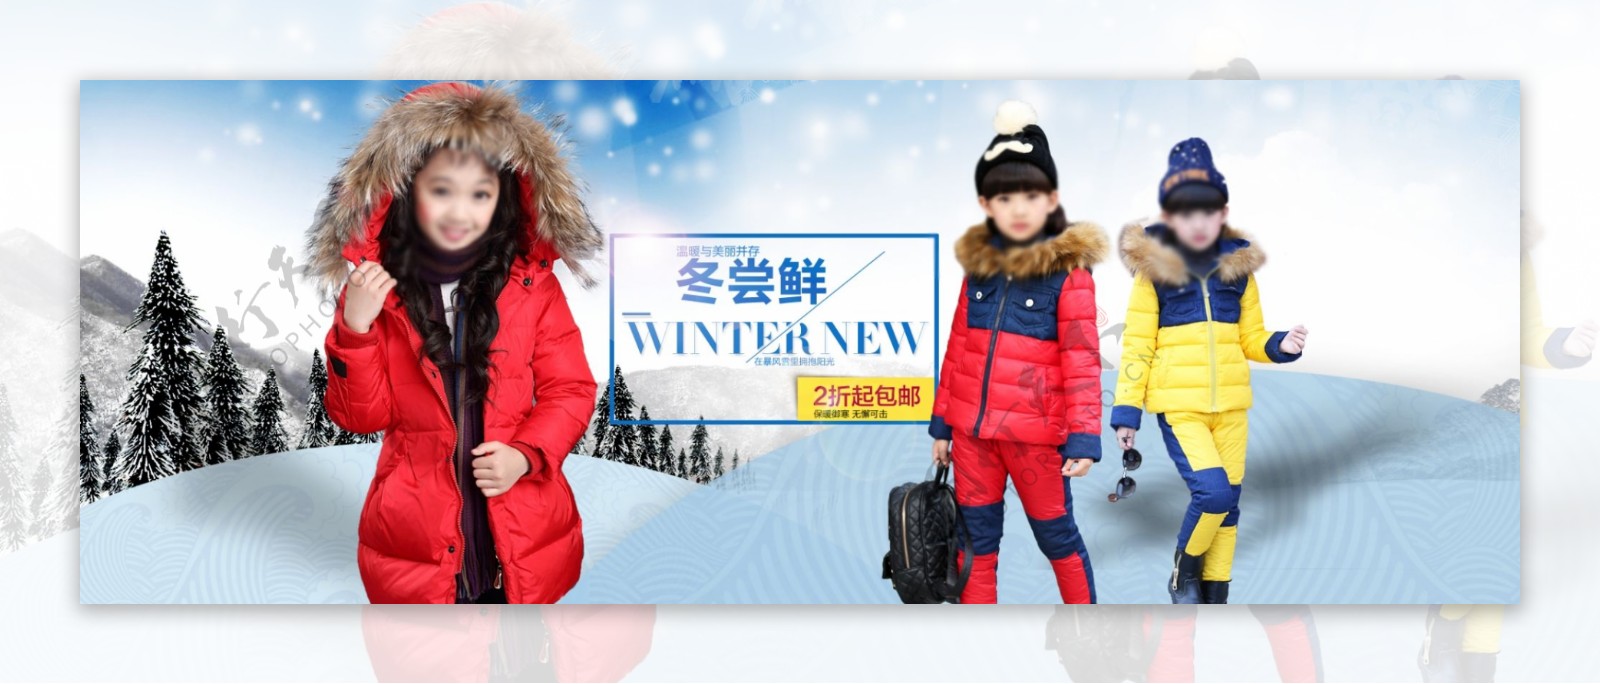 2015女童冬季活动海报源文件